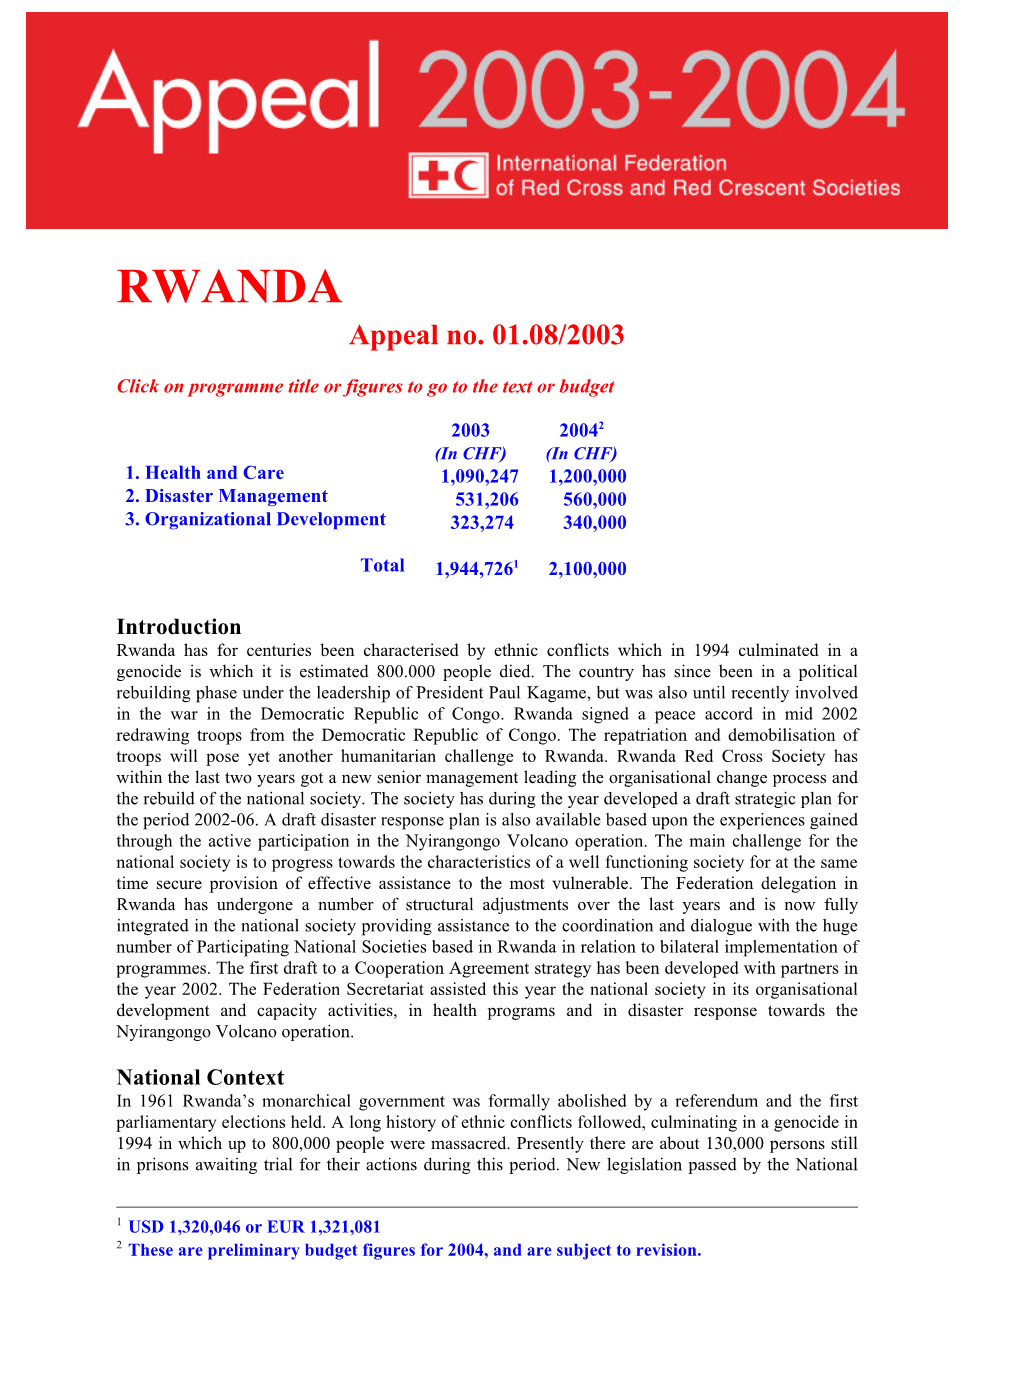 RWANDA Appeal No